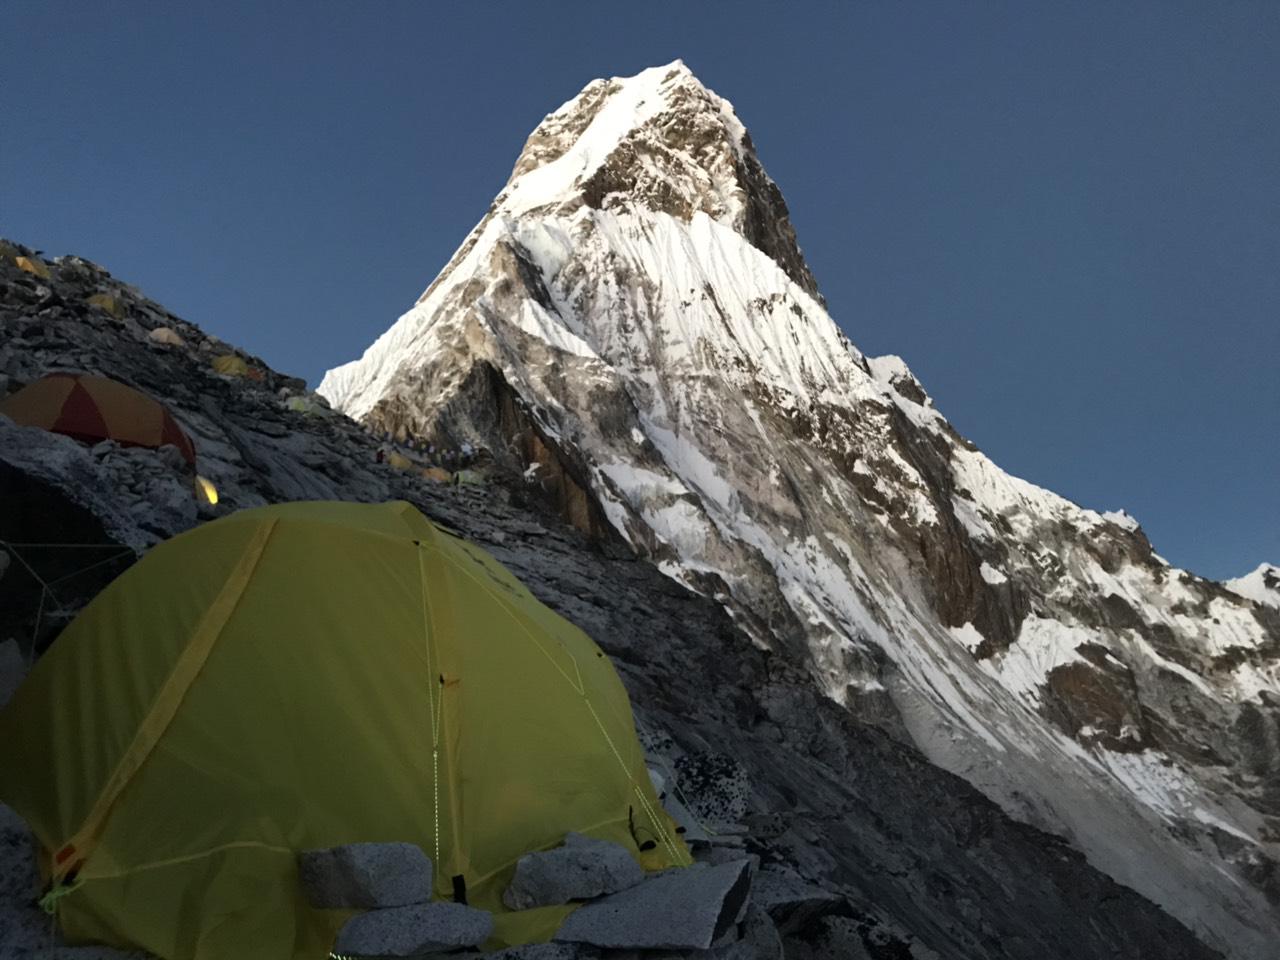 Mera Peak Climb (6476 m) – 20 days